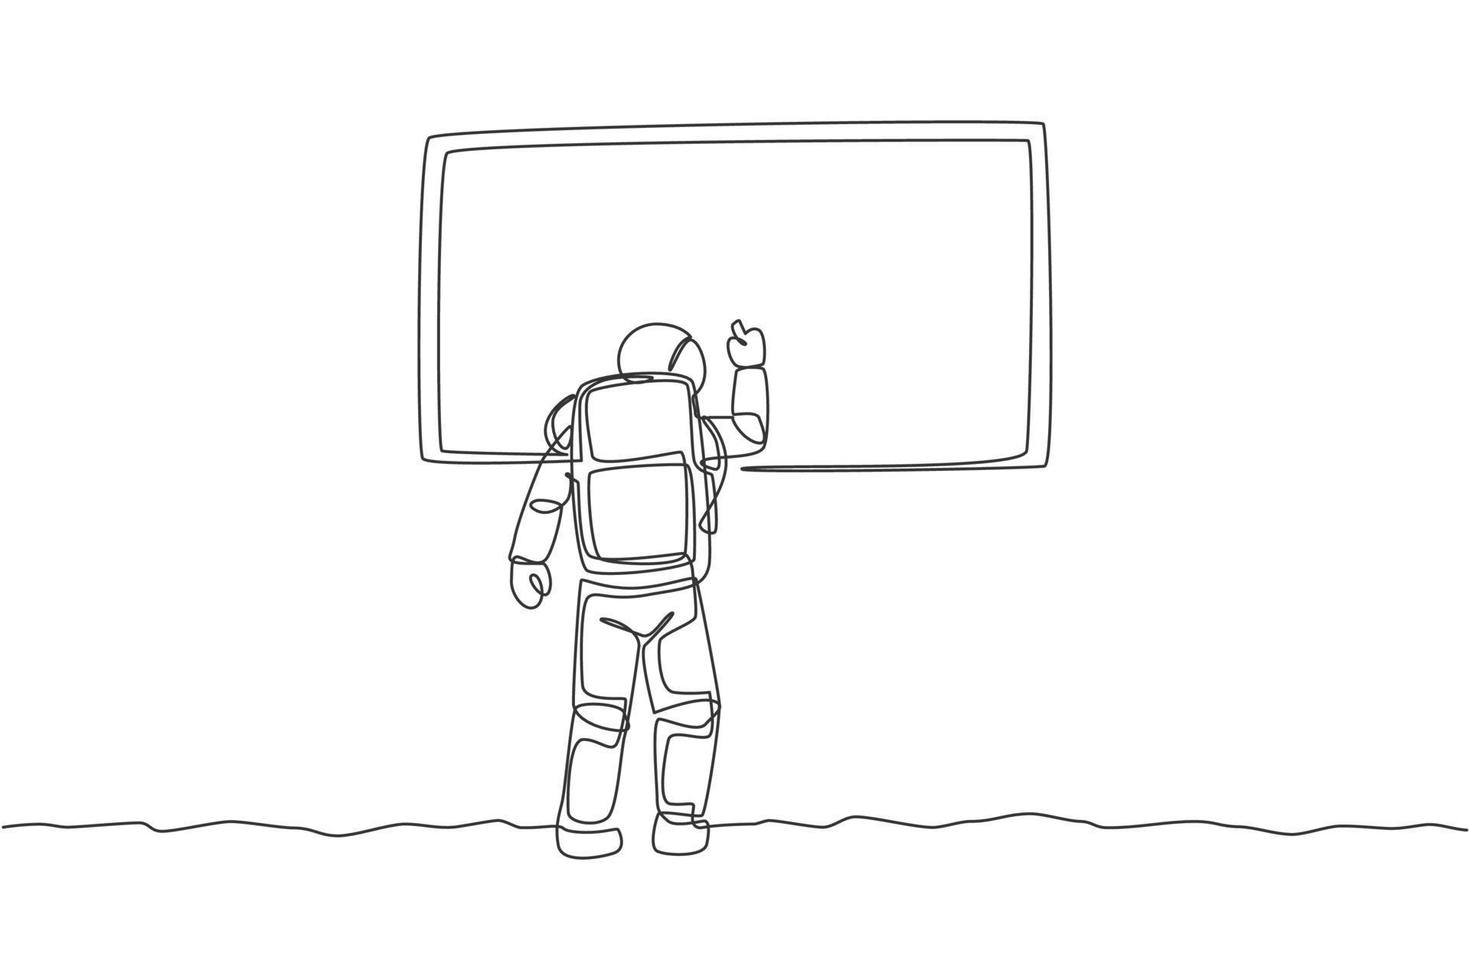 un seul dessin d'un jeune astronaute écrivant sur un tableau blanc pour enseigner à certains étudiants l'illustration vectorielle graphique de la surface de la lune. concept d'espace lointain de cosmonaute. conception de dessin de ligne continue moderne vecteur